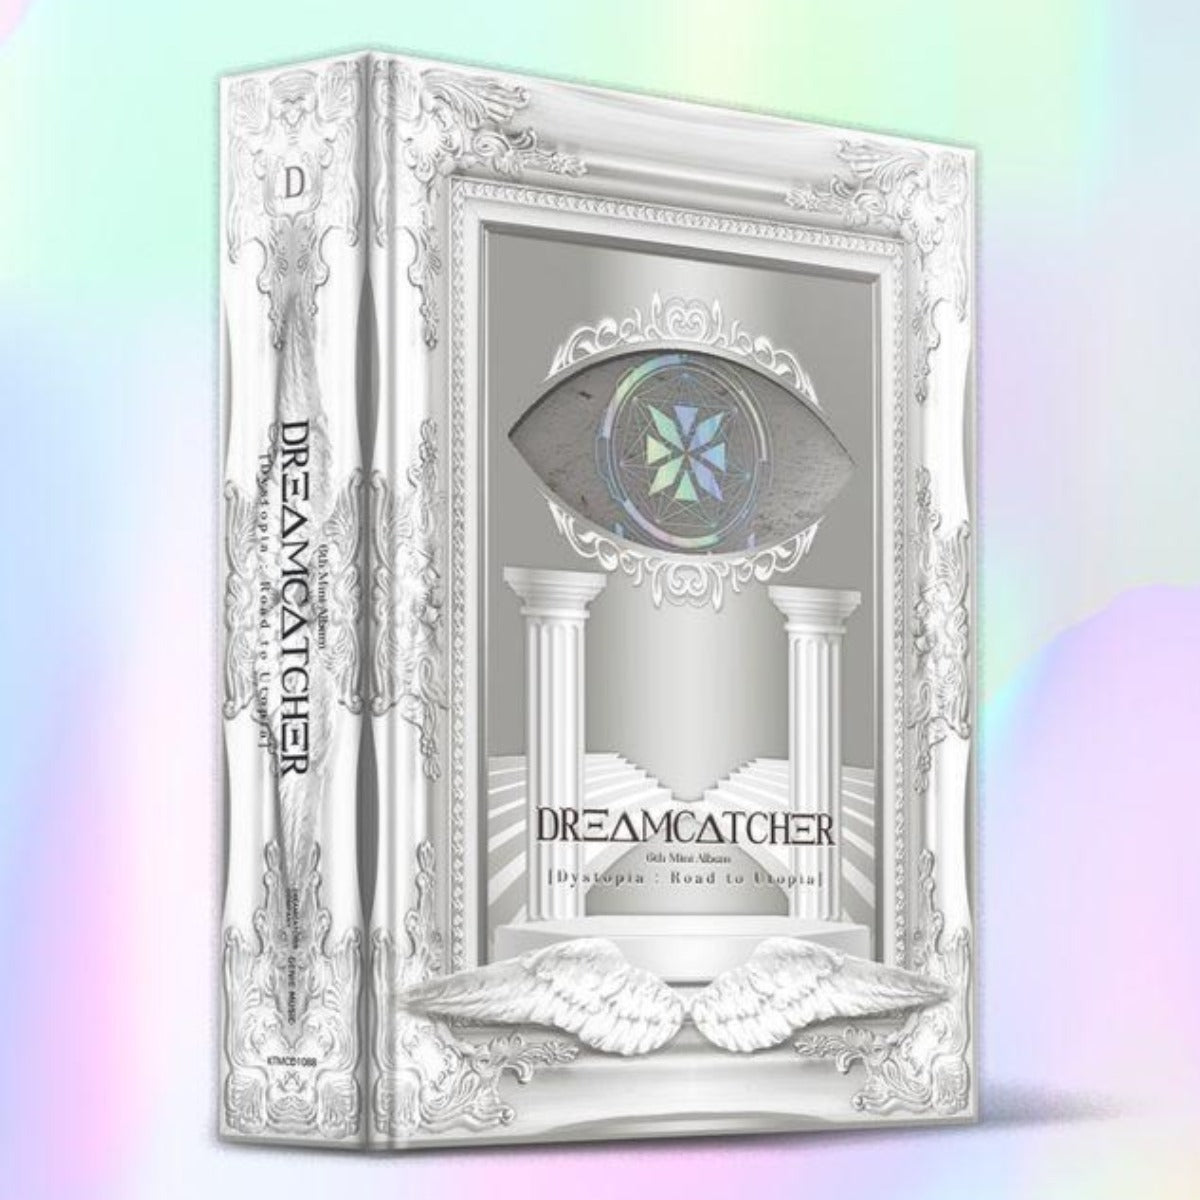 Dreamcatcher Mini Album Vol. 6 - Dystopia : Road to Utopia (First Press Limited Edition) (D Version)